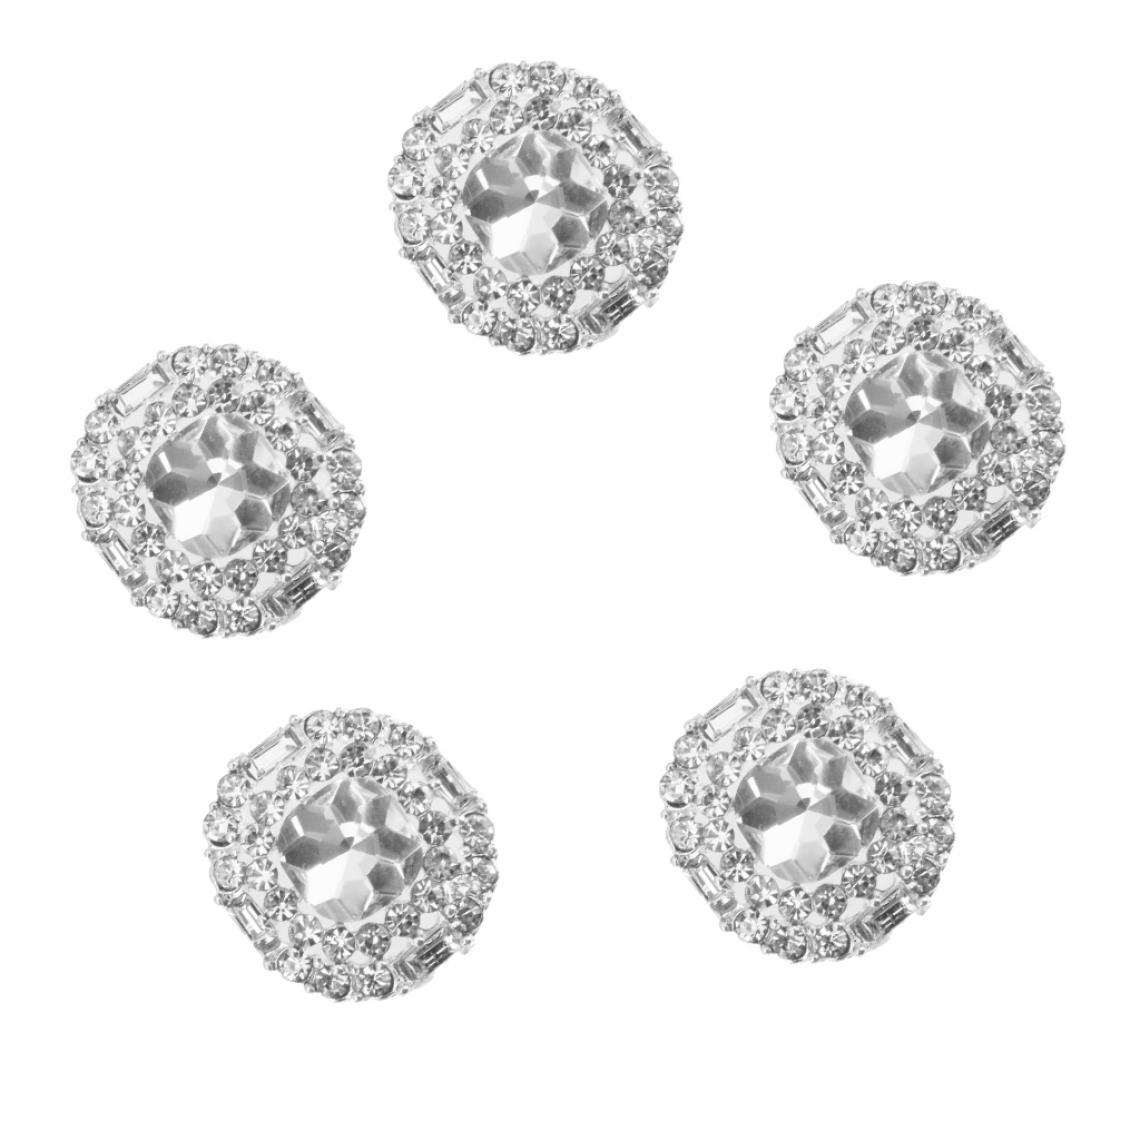 marque generique - Lot de 5pcs Boutons de Cristal Tige Décoration Couture Sac Chapeau Diy 2.3x2.3cm - Argent - Poignée de meuble